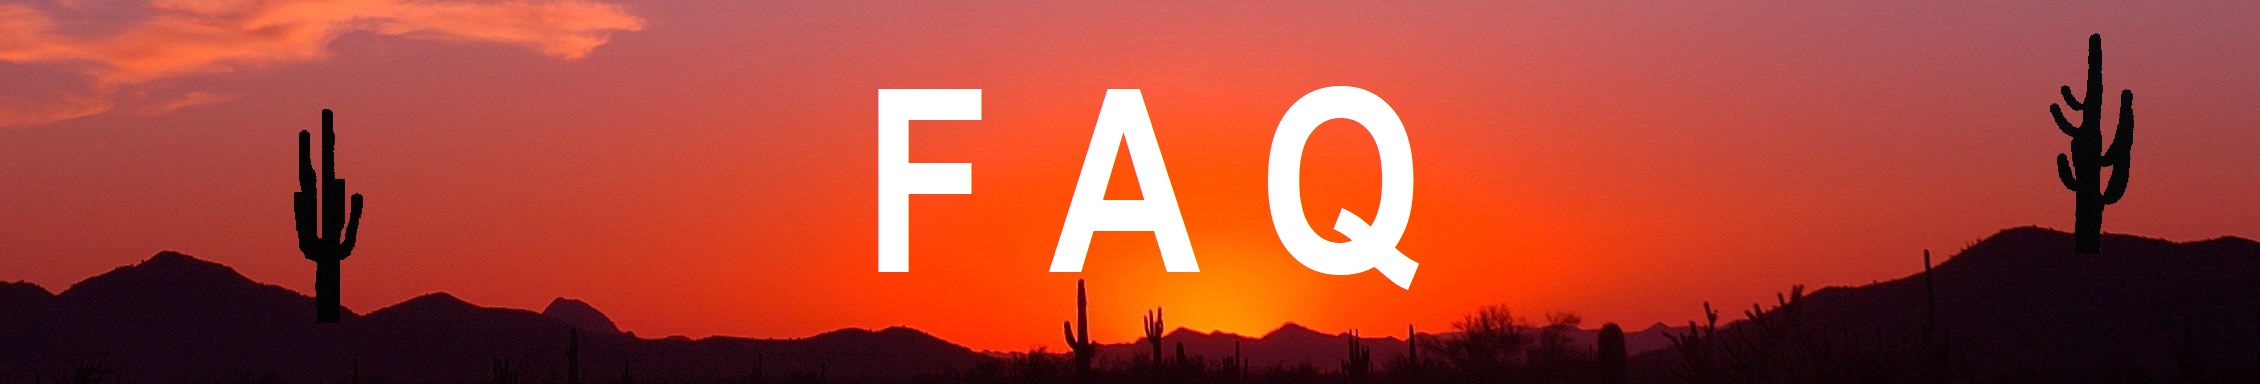 FAQ Sunset Header